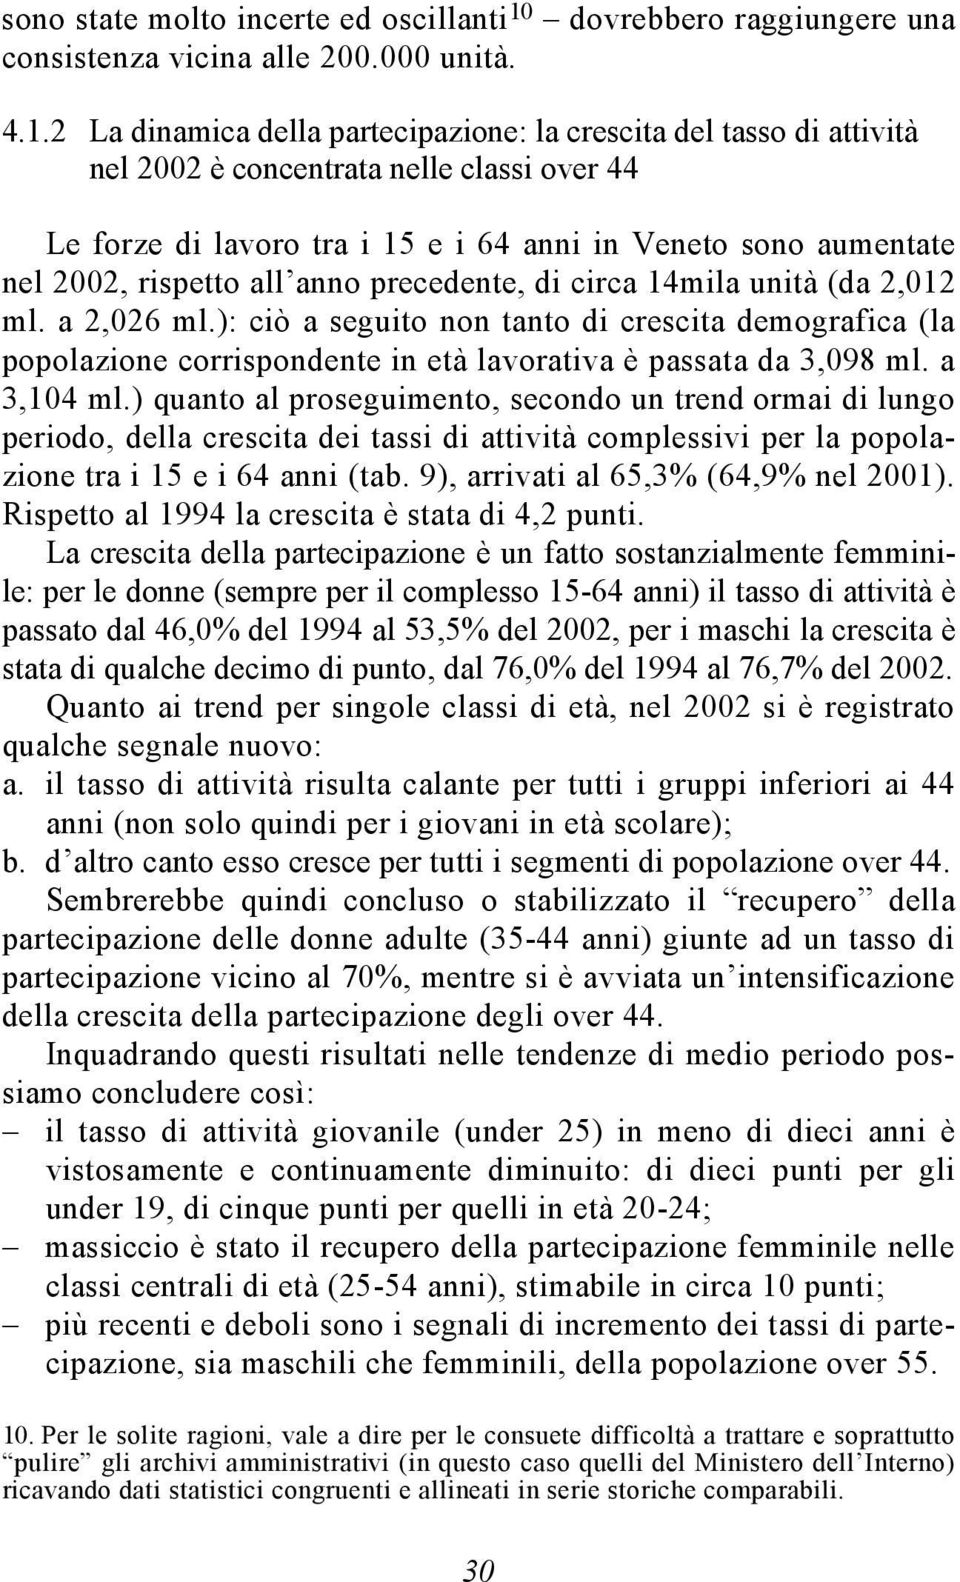 2 La dinamica della partecipazione: la crescita del tasso di attività nel 2002 è concentrata nelle classi over 44 Le forze di lavoro tra i 15 e i 64 anni in Veneto sono aumentate nel 2002, rispetto